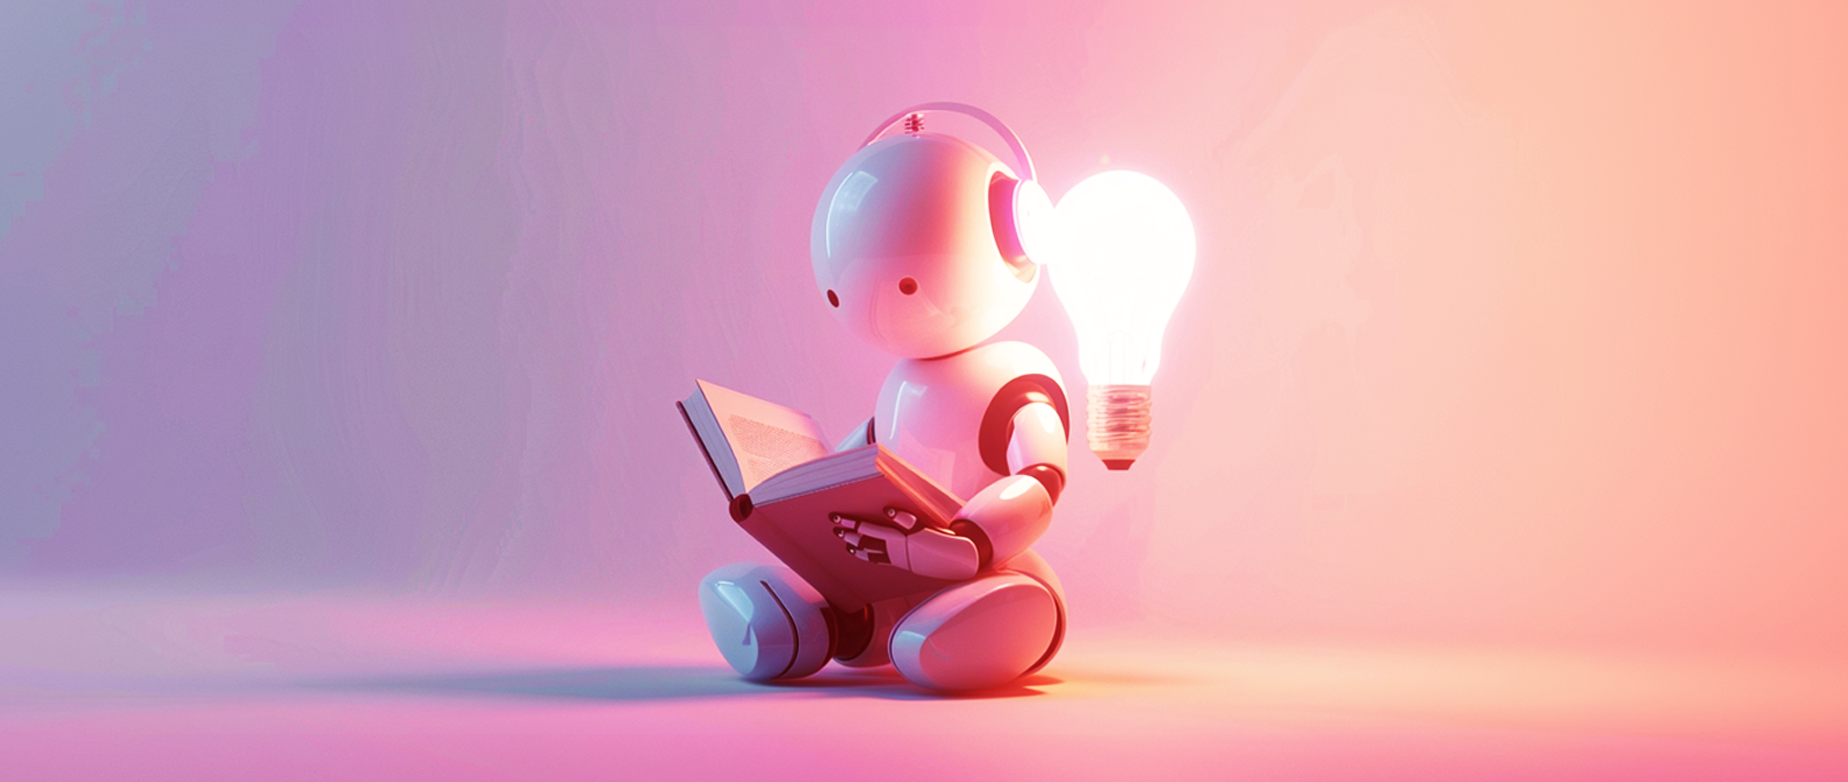 A robot reading a book next to an illuminated lightbulb.